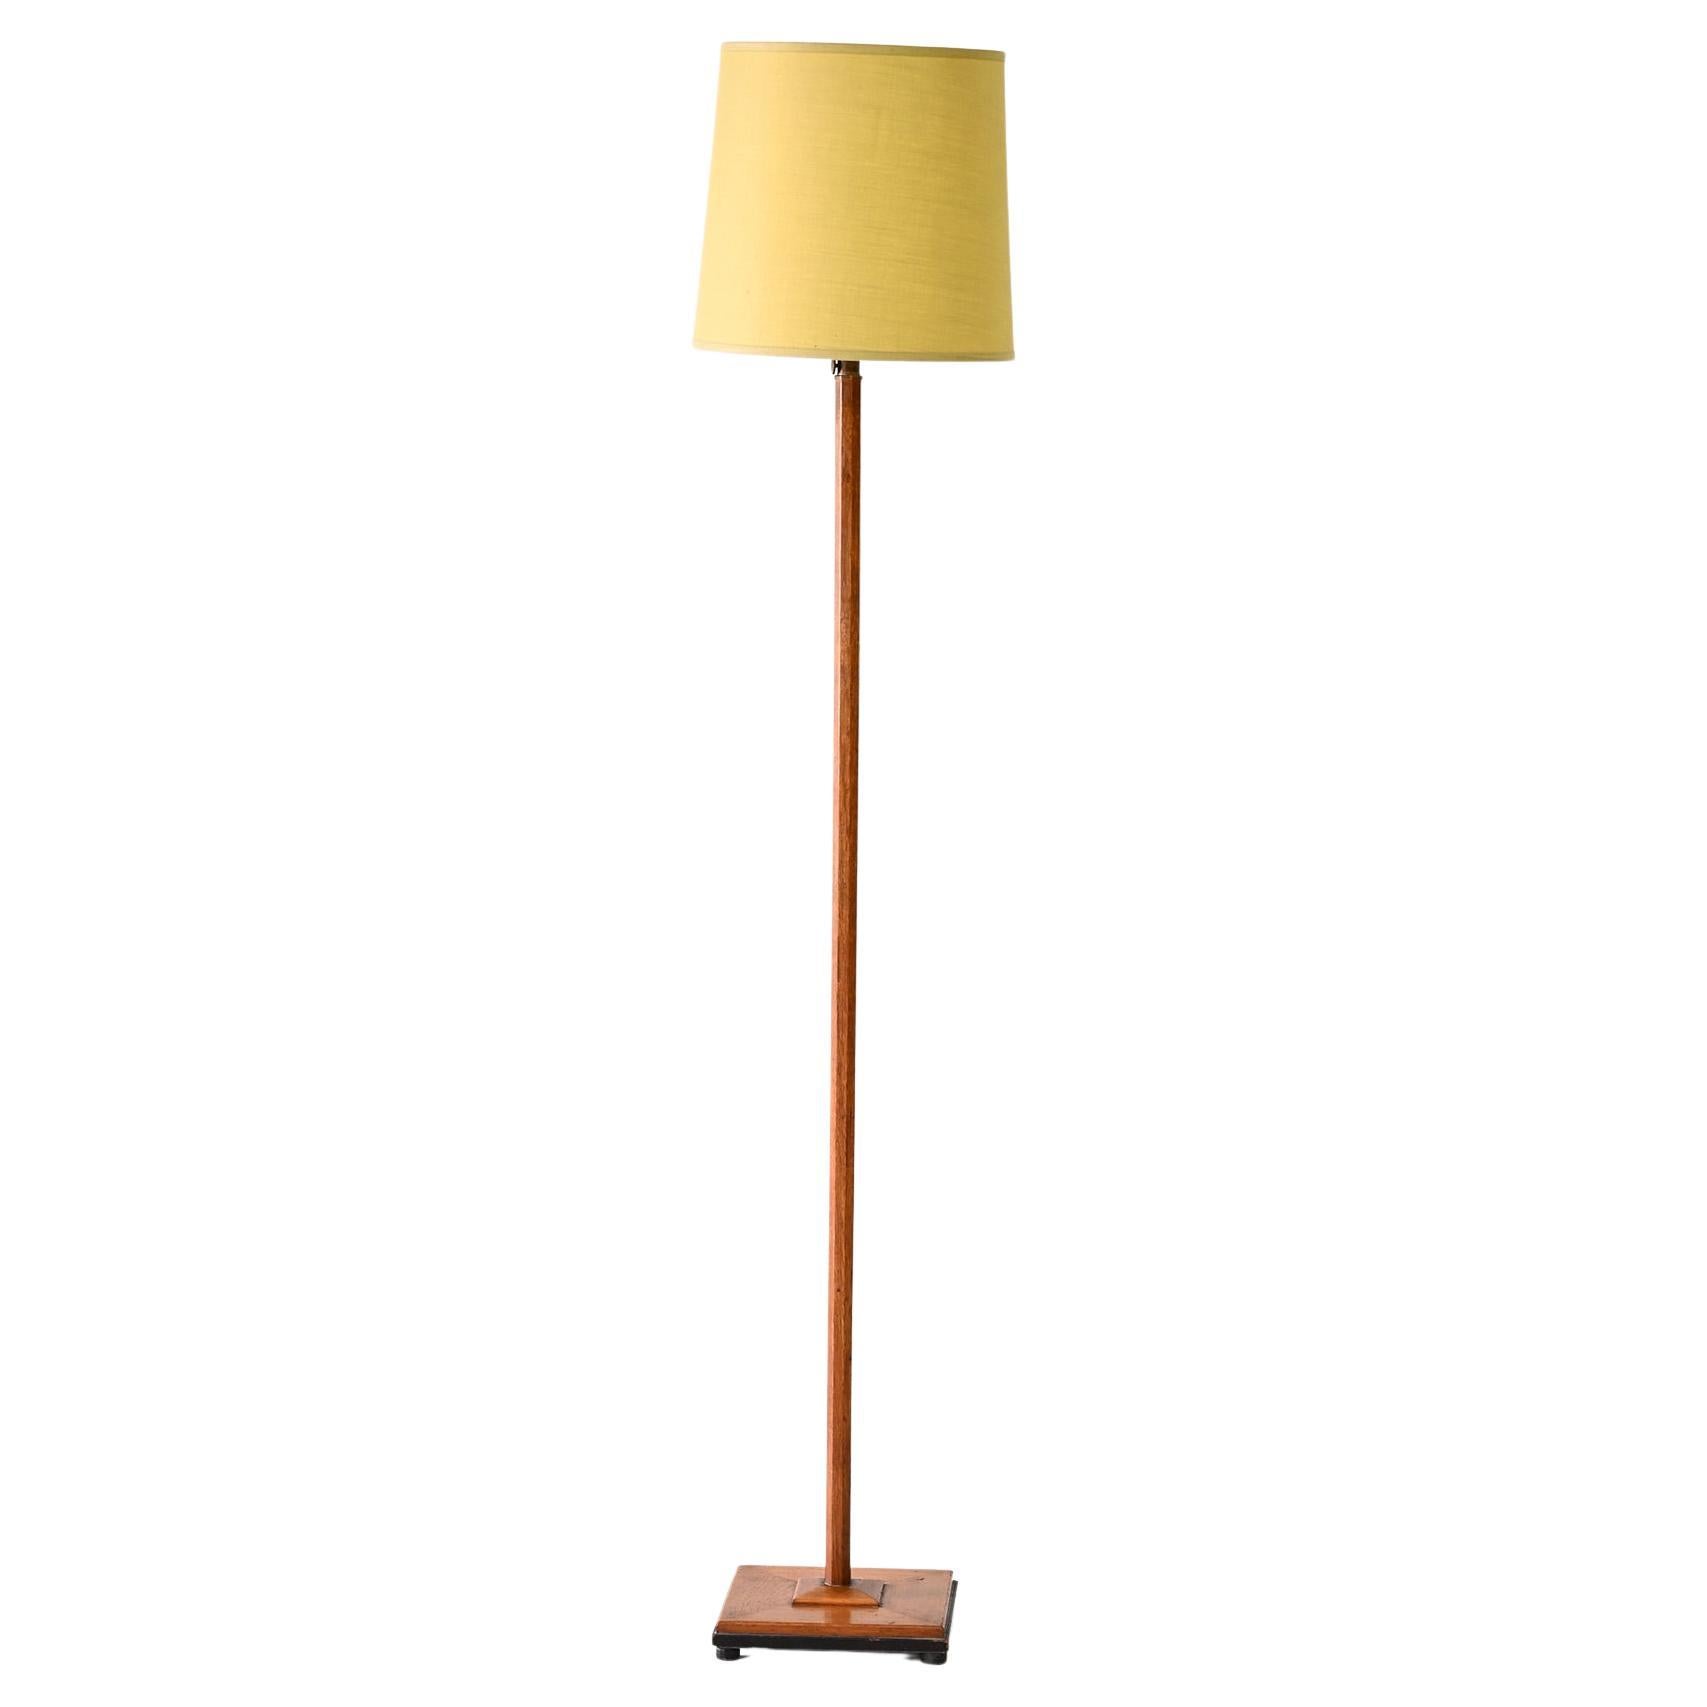 Scandinavian yellow floor lamp For Sale